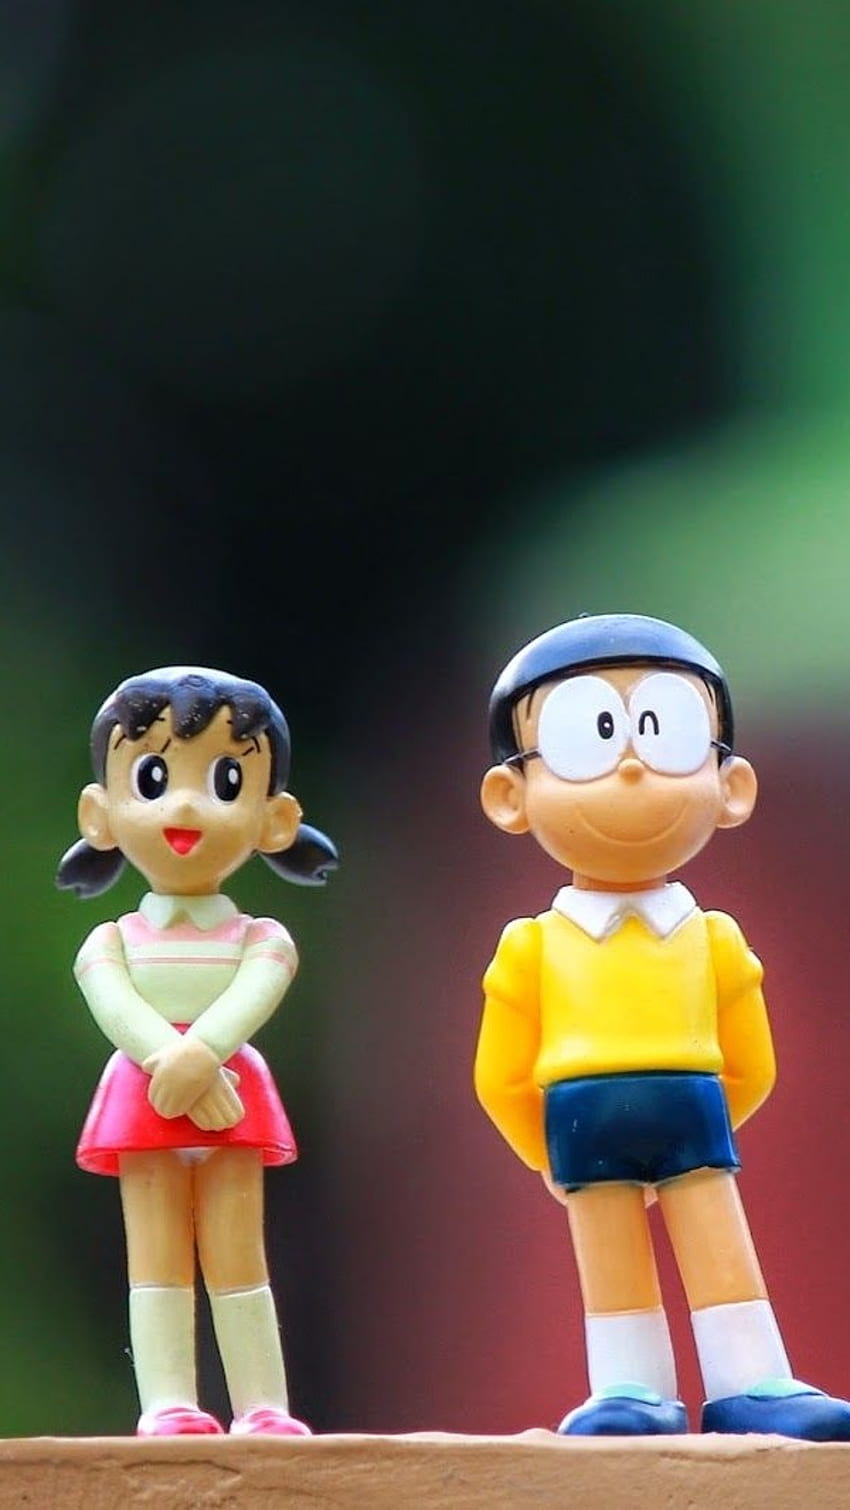 Nobita Wallpapers - Top Những Hình Ảnh Đẹp